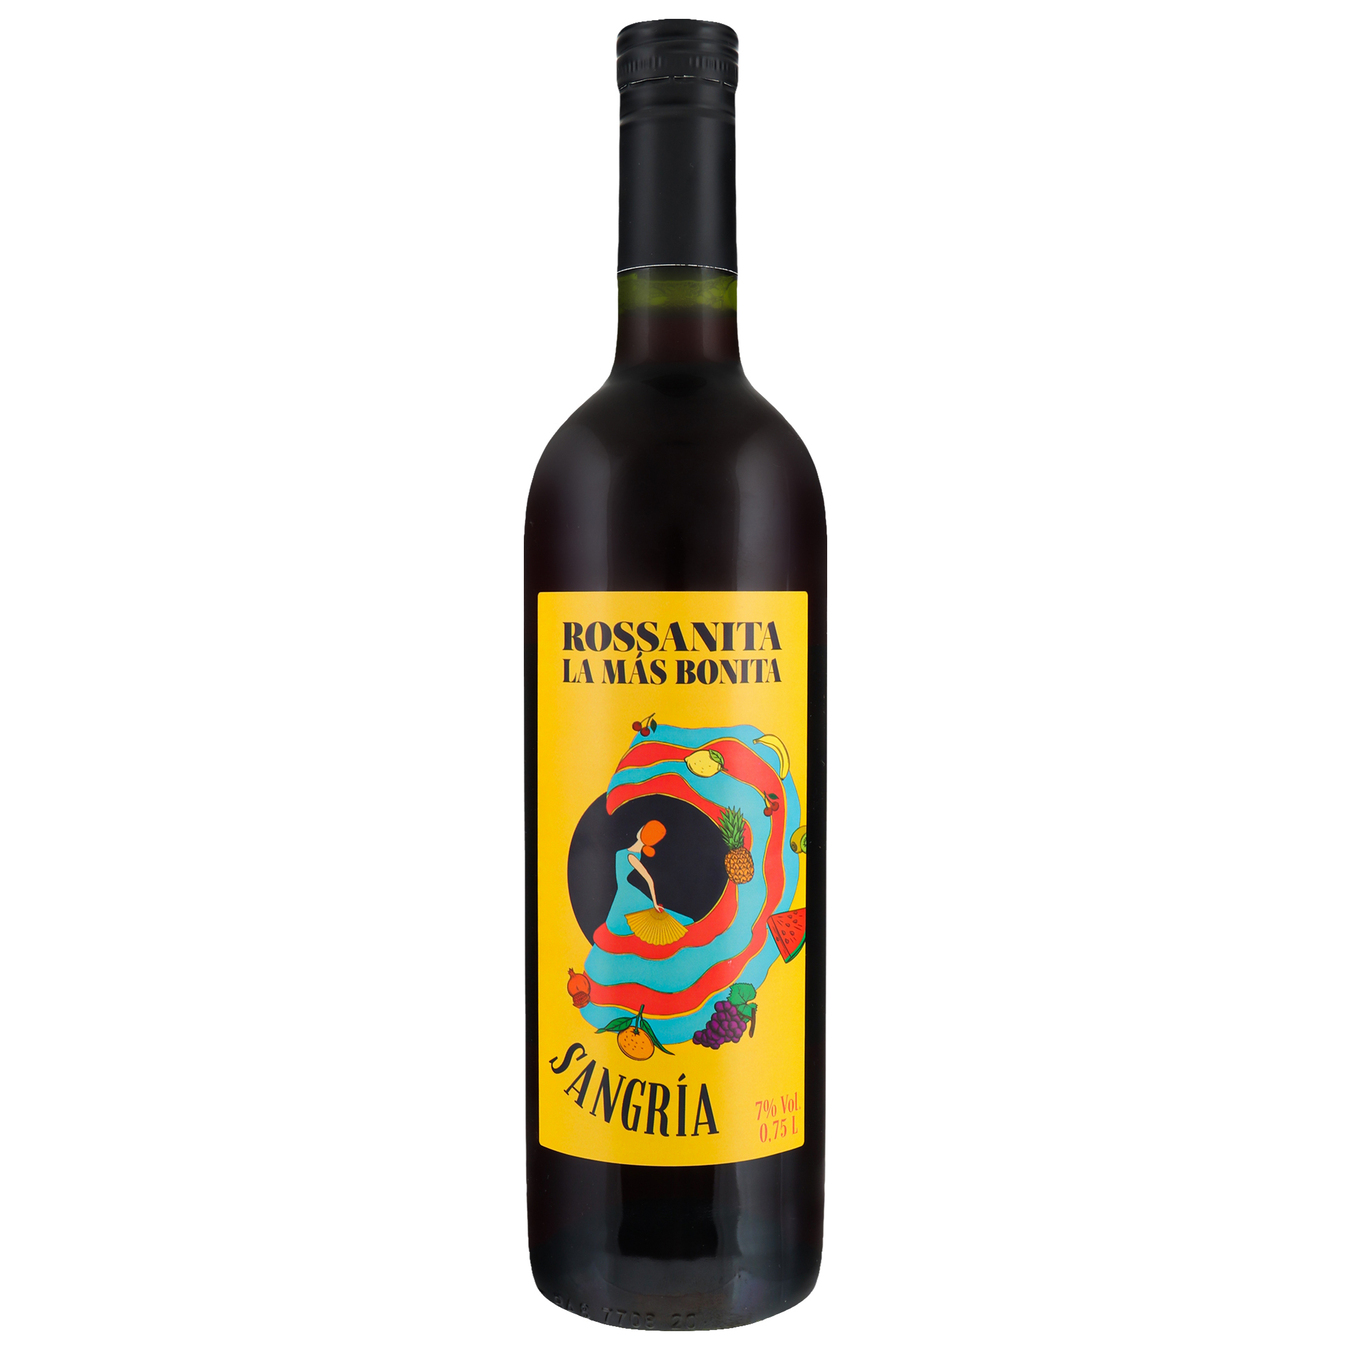 Wine Rossanita Sangria red semi-sweet 7% 0,75l